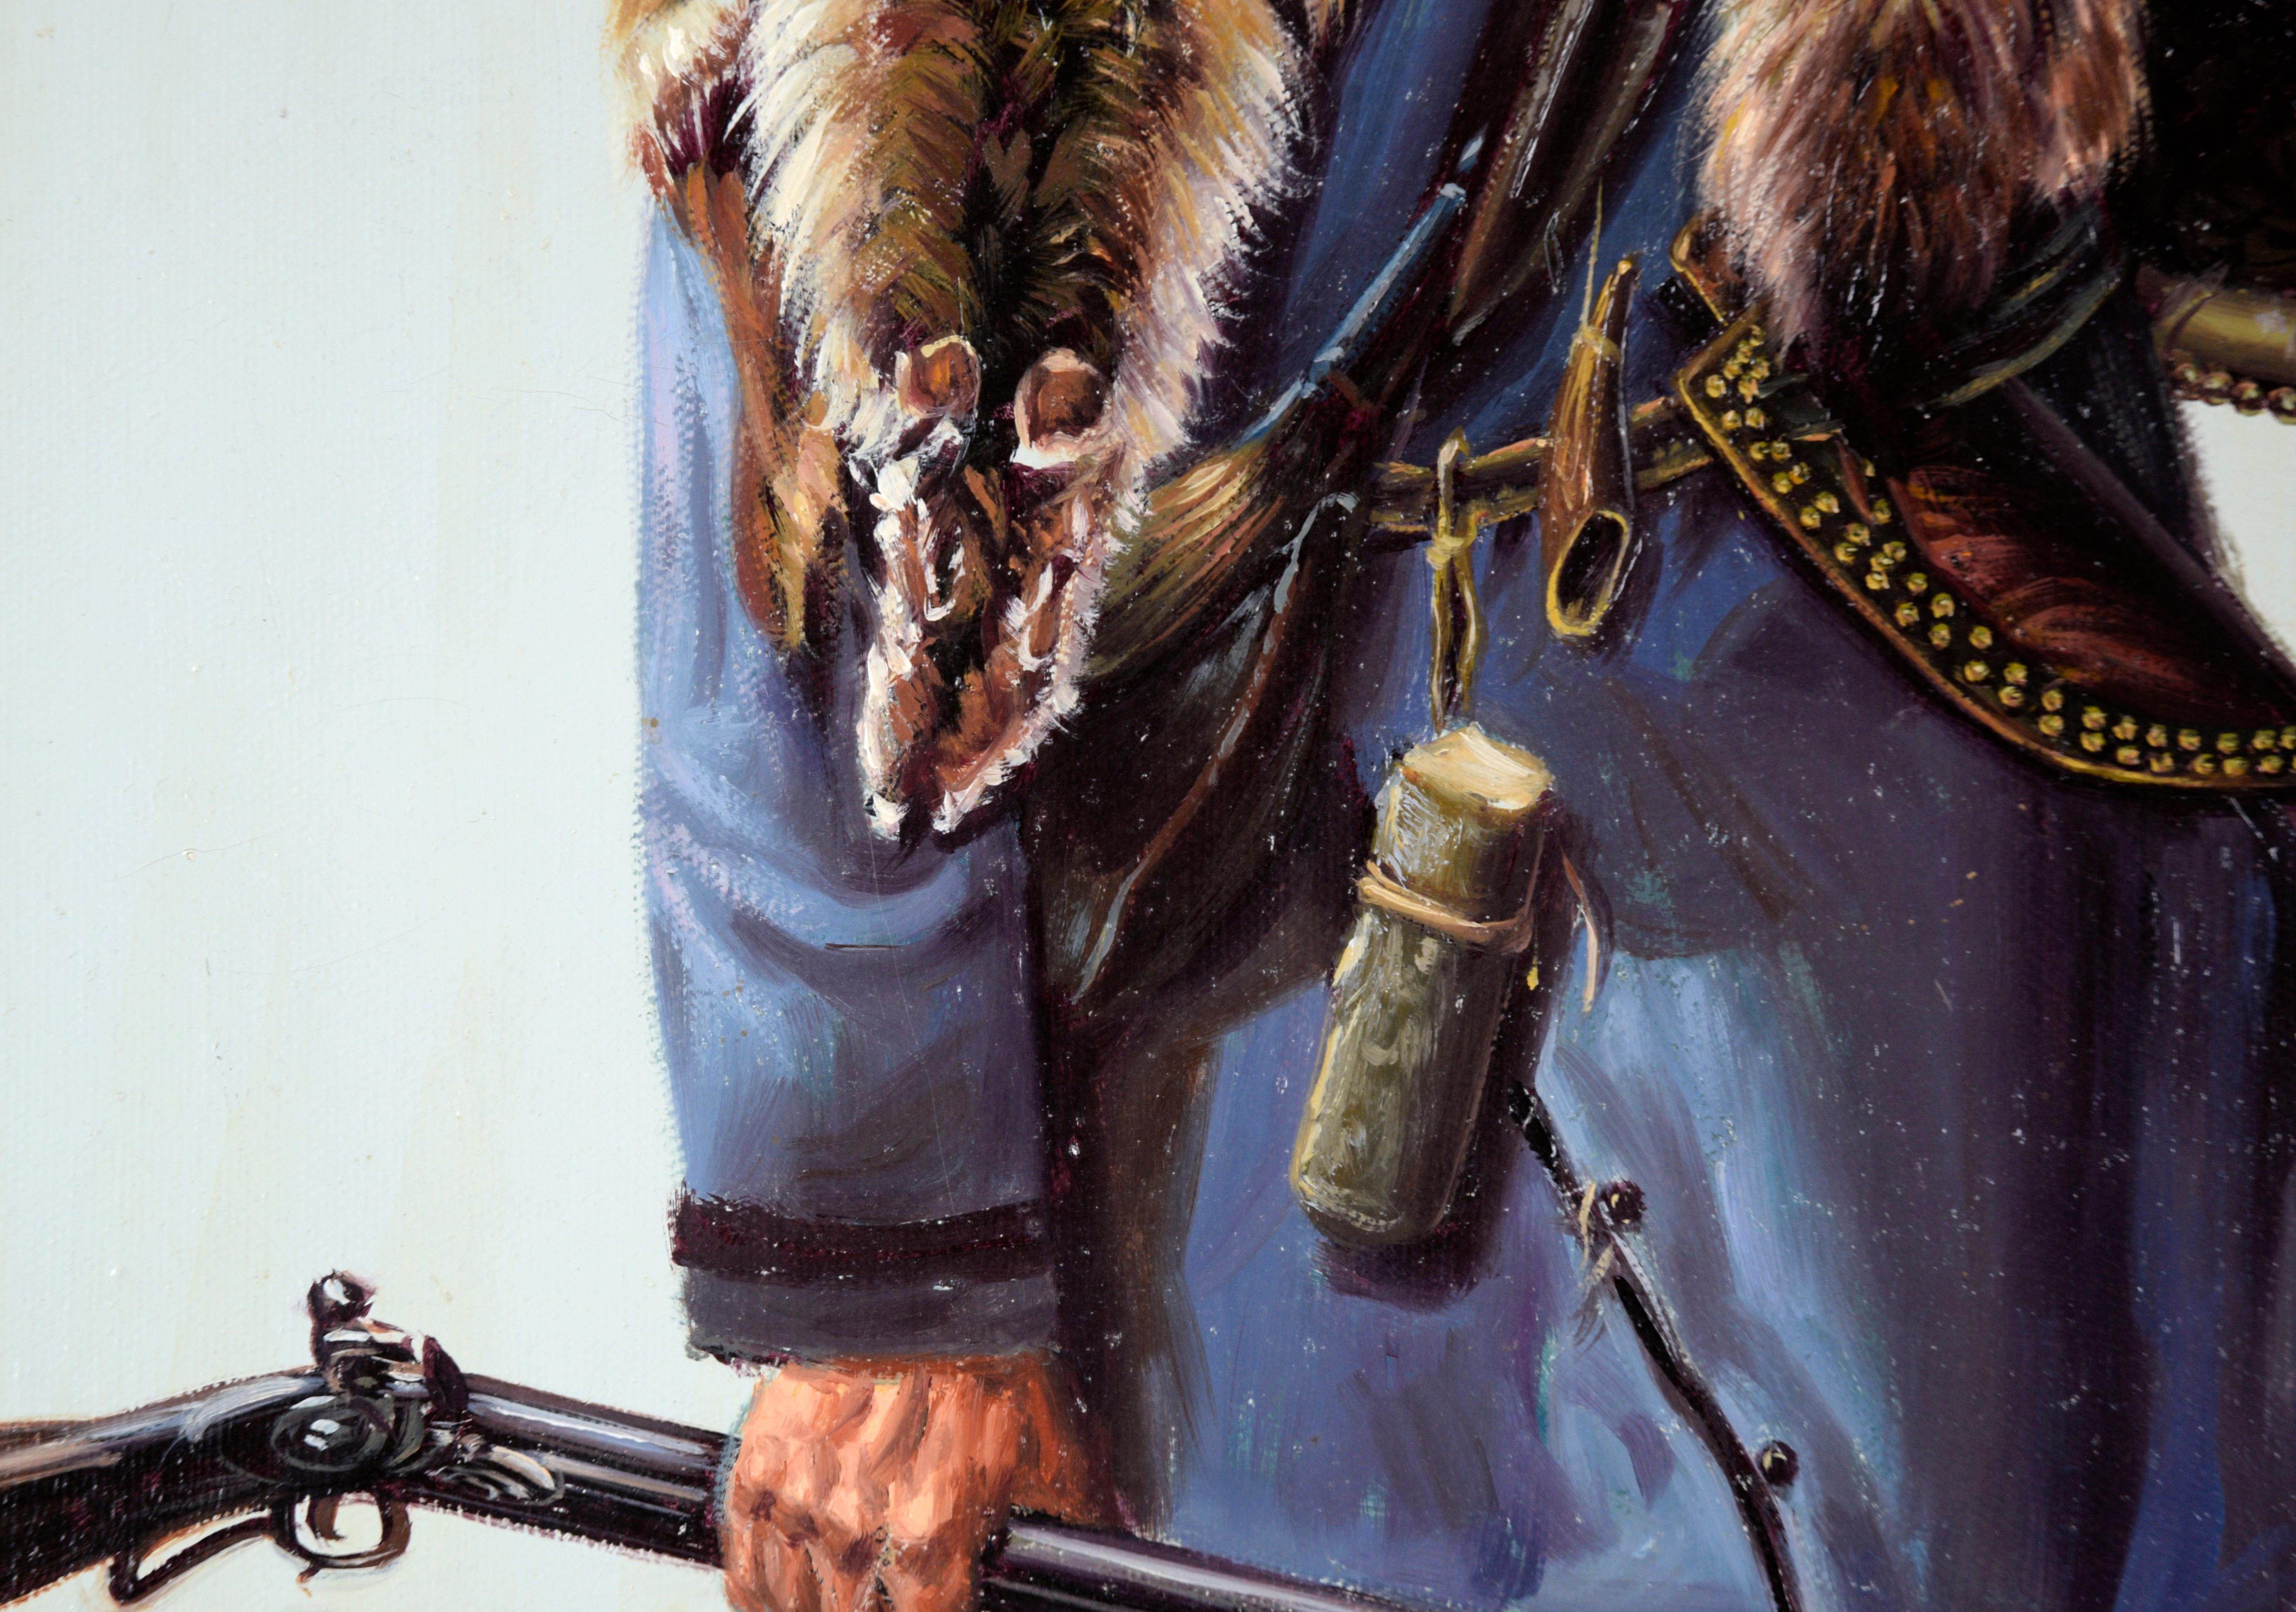 Fur Trapper in Winter – Porträt in Öl auf Leinwand

Majestätisches Ganzkörperporträt eines im Schnee stehenden Pelztierjägers von John Pieron. Ein Mann steht knöcheltief im Schnee und hält ein Gewehr. Er trägt einen schweren blauen Mantel, eine